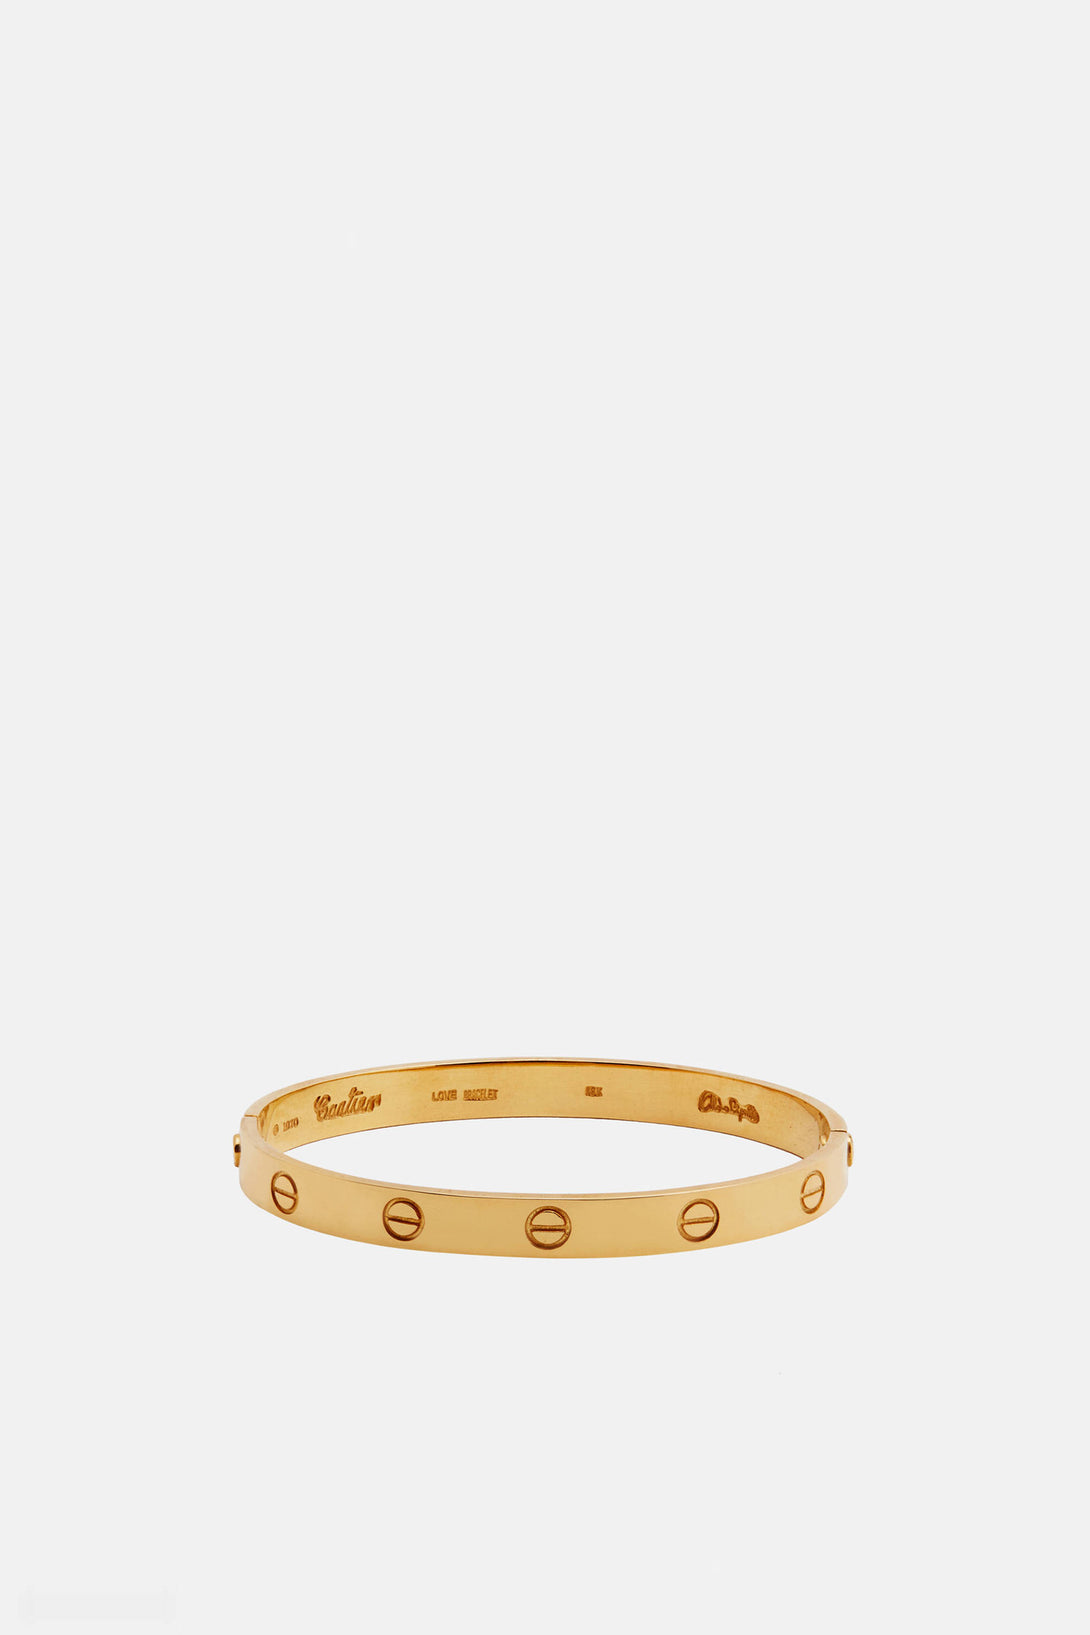 Cartier Love Bracelet – The Line